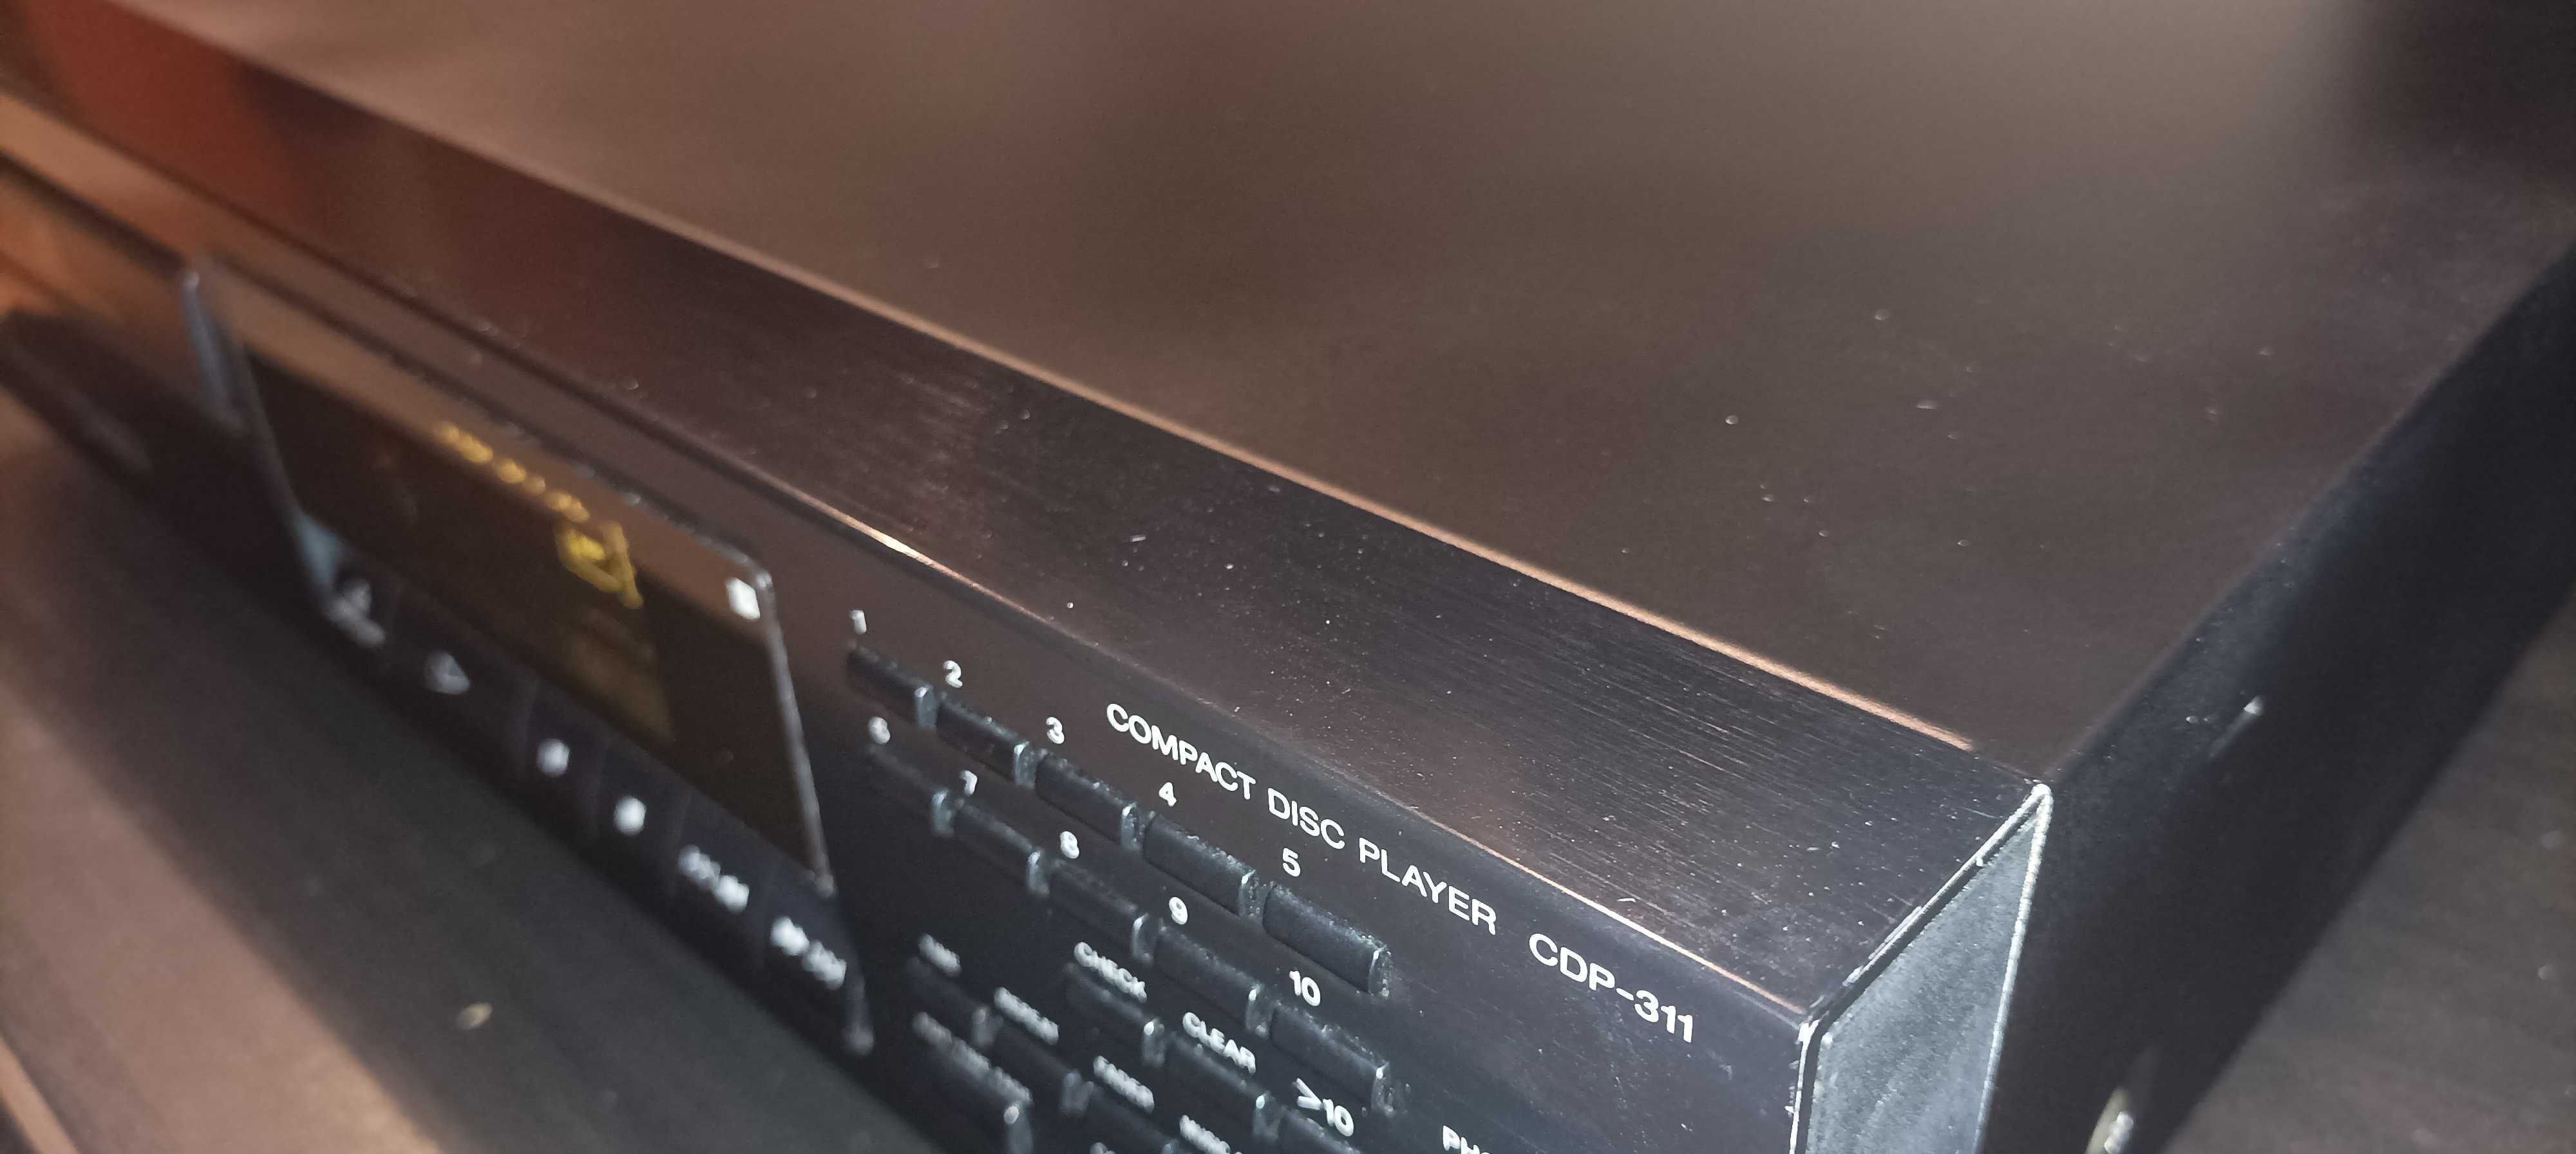 Sony CDP 311 bursztynowy wyświetlacz